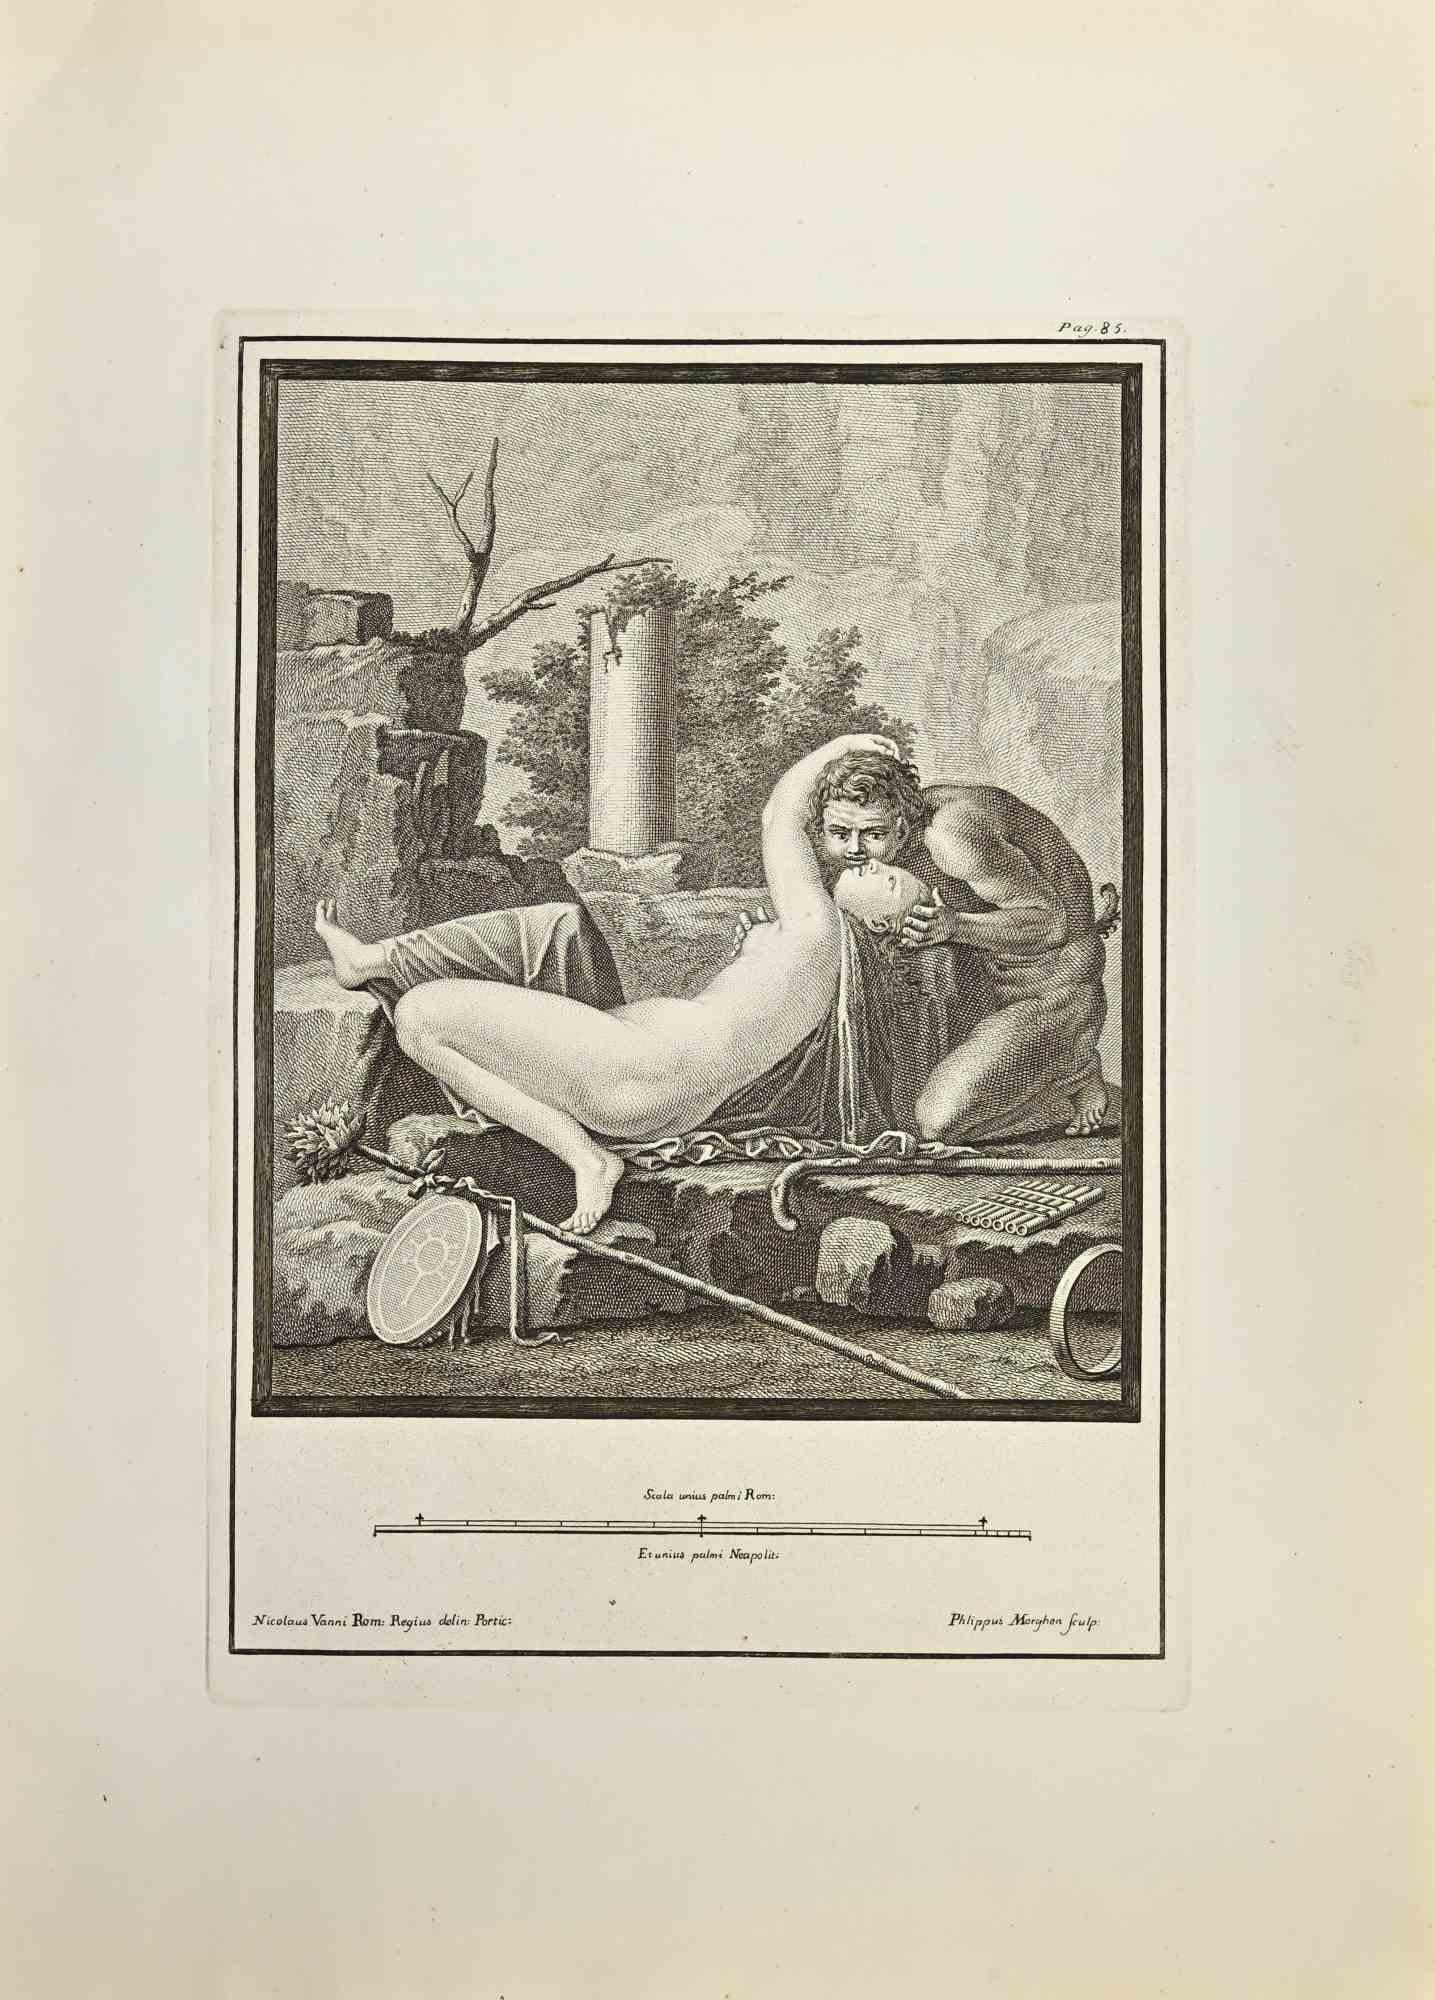 Pan und Akt aus den "Altertümern von Herculaneum" ist eine Radierung auf Papier von Filippo Morghen aus dem 18. Jahrhundert.

Signiert auf der Platte.

Guter Zustand mit einigen Stockflecken und Falten aufgrund der Zeit.

Die Radierung gehört zu der